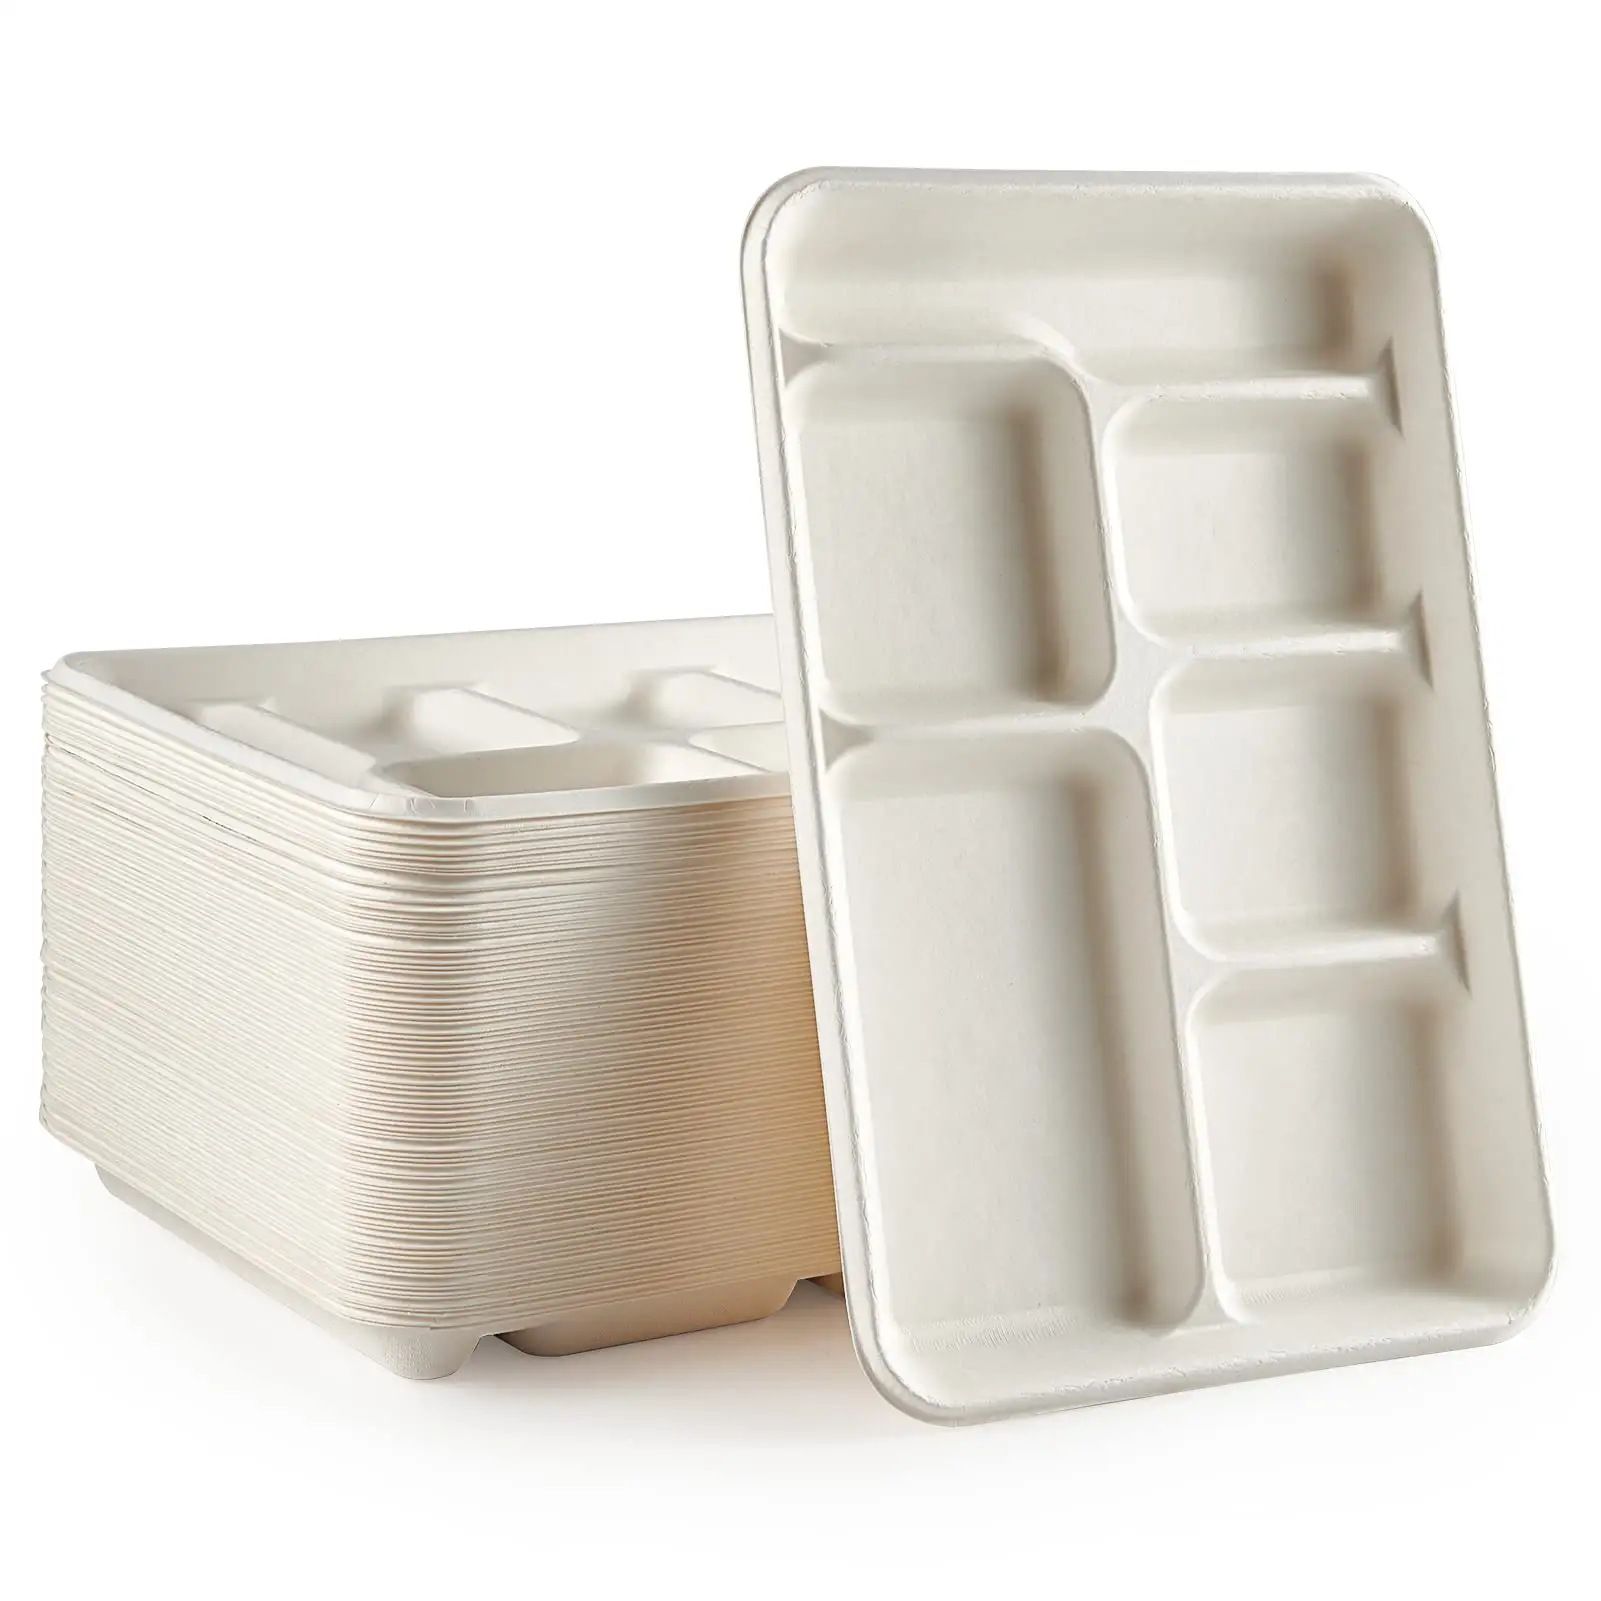 퇴비 가능한 6 칸 접시 구획 종이 접시 일회용 학교 급식 트레이 뷔페 용 친환경 Bagasse 접시